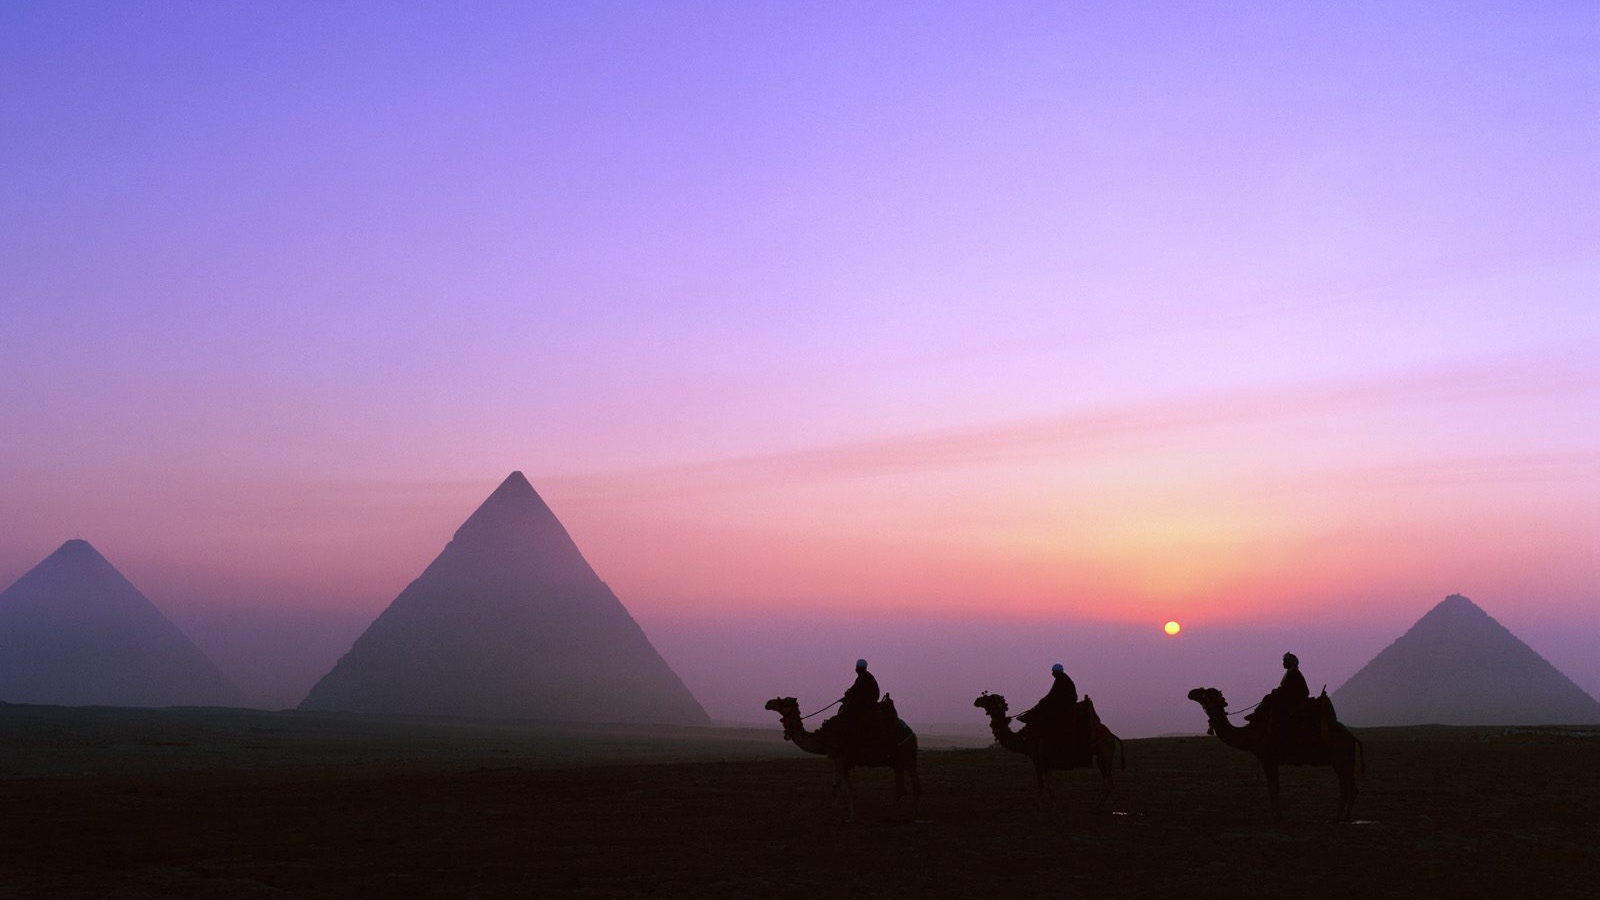 Пирамиды Гизы